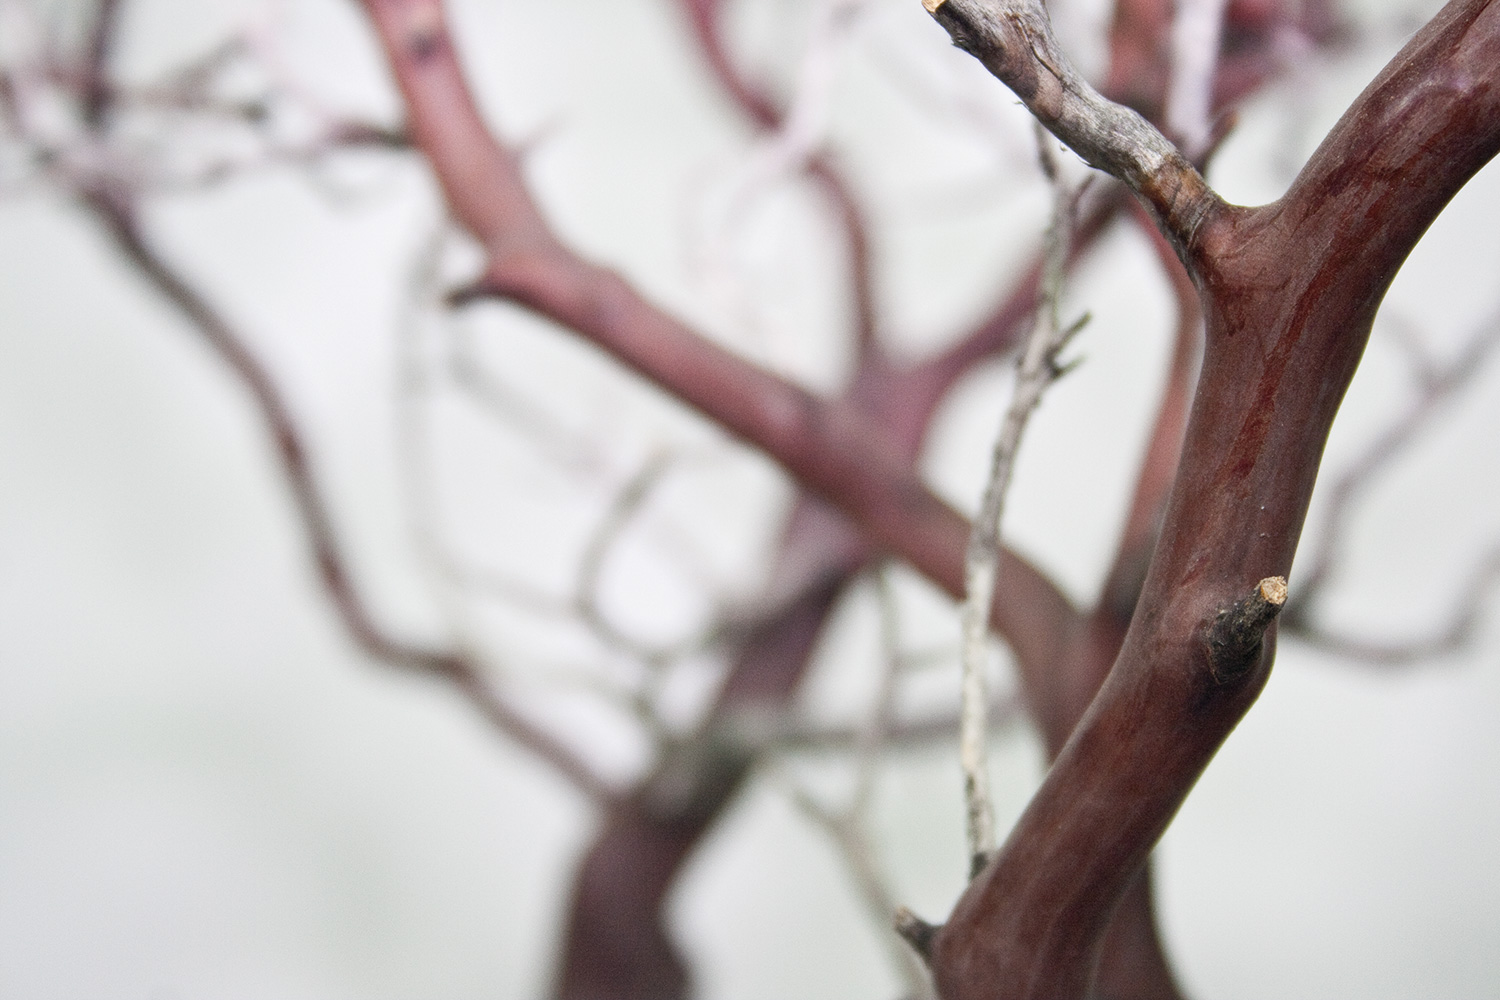 Manzanita, braun, verzweigt, 150-175 cm H: 175 | natur braun